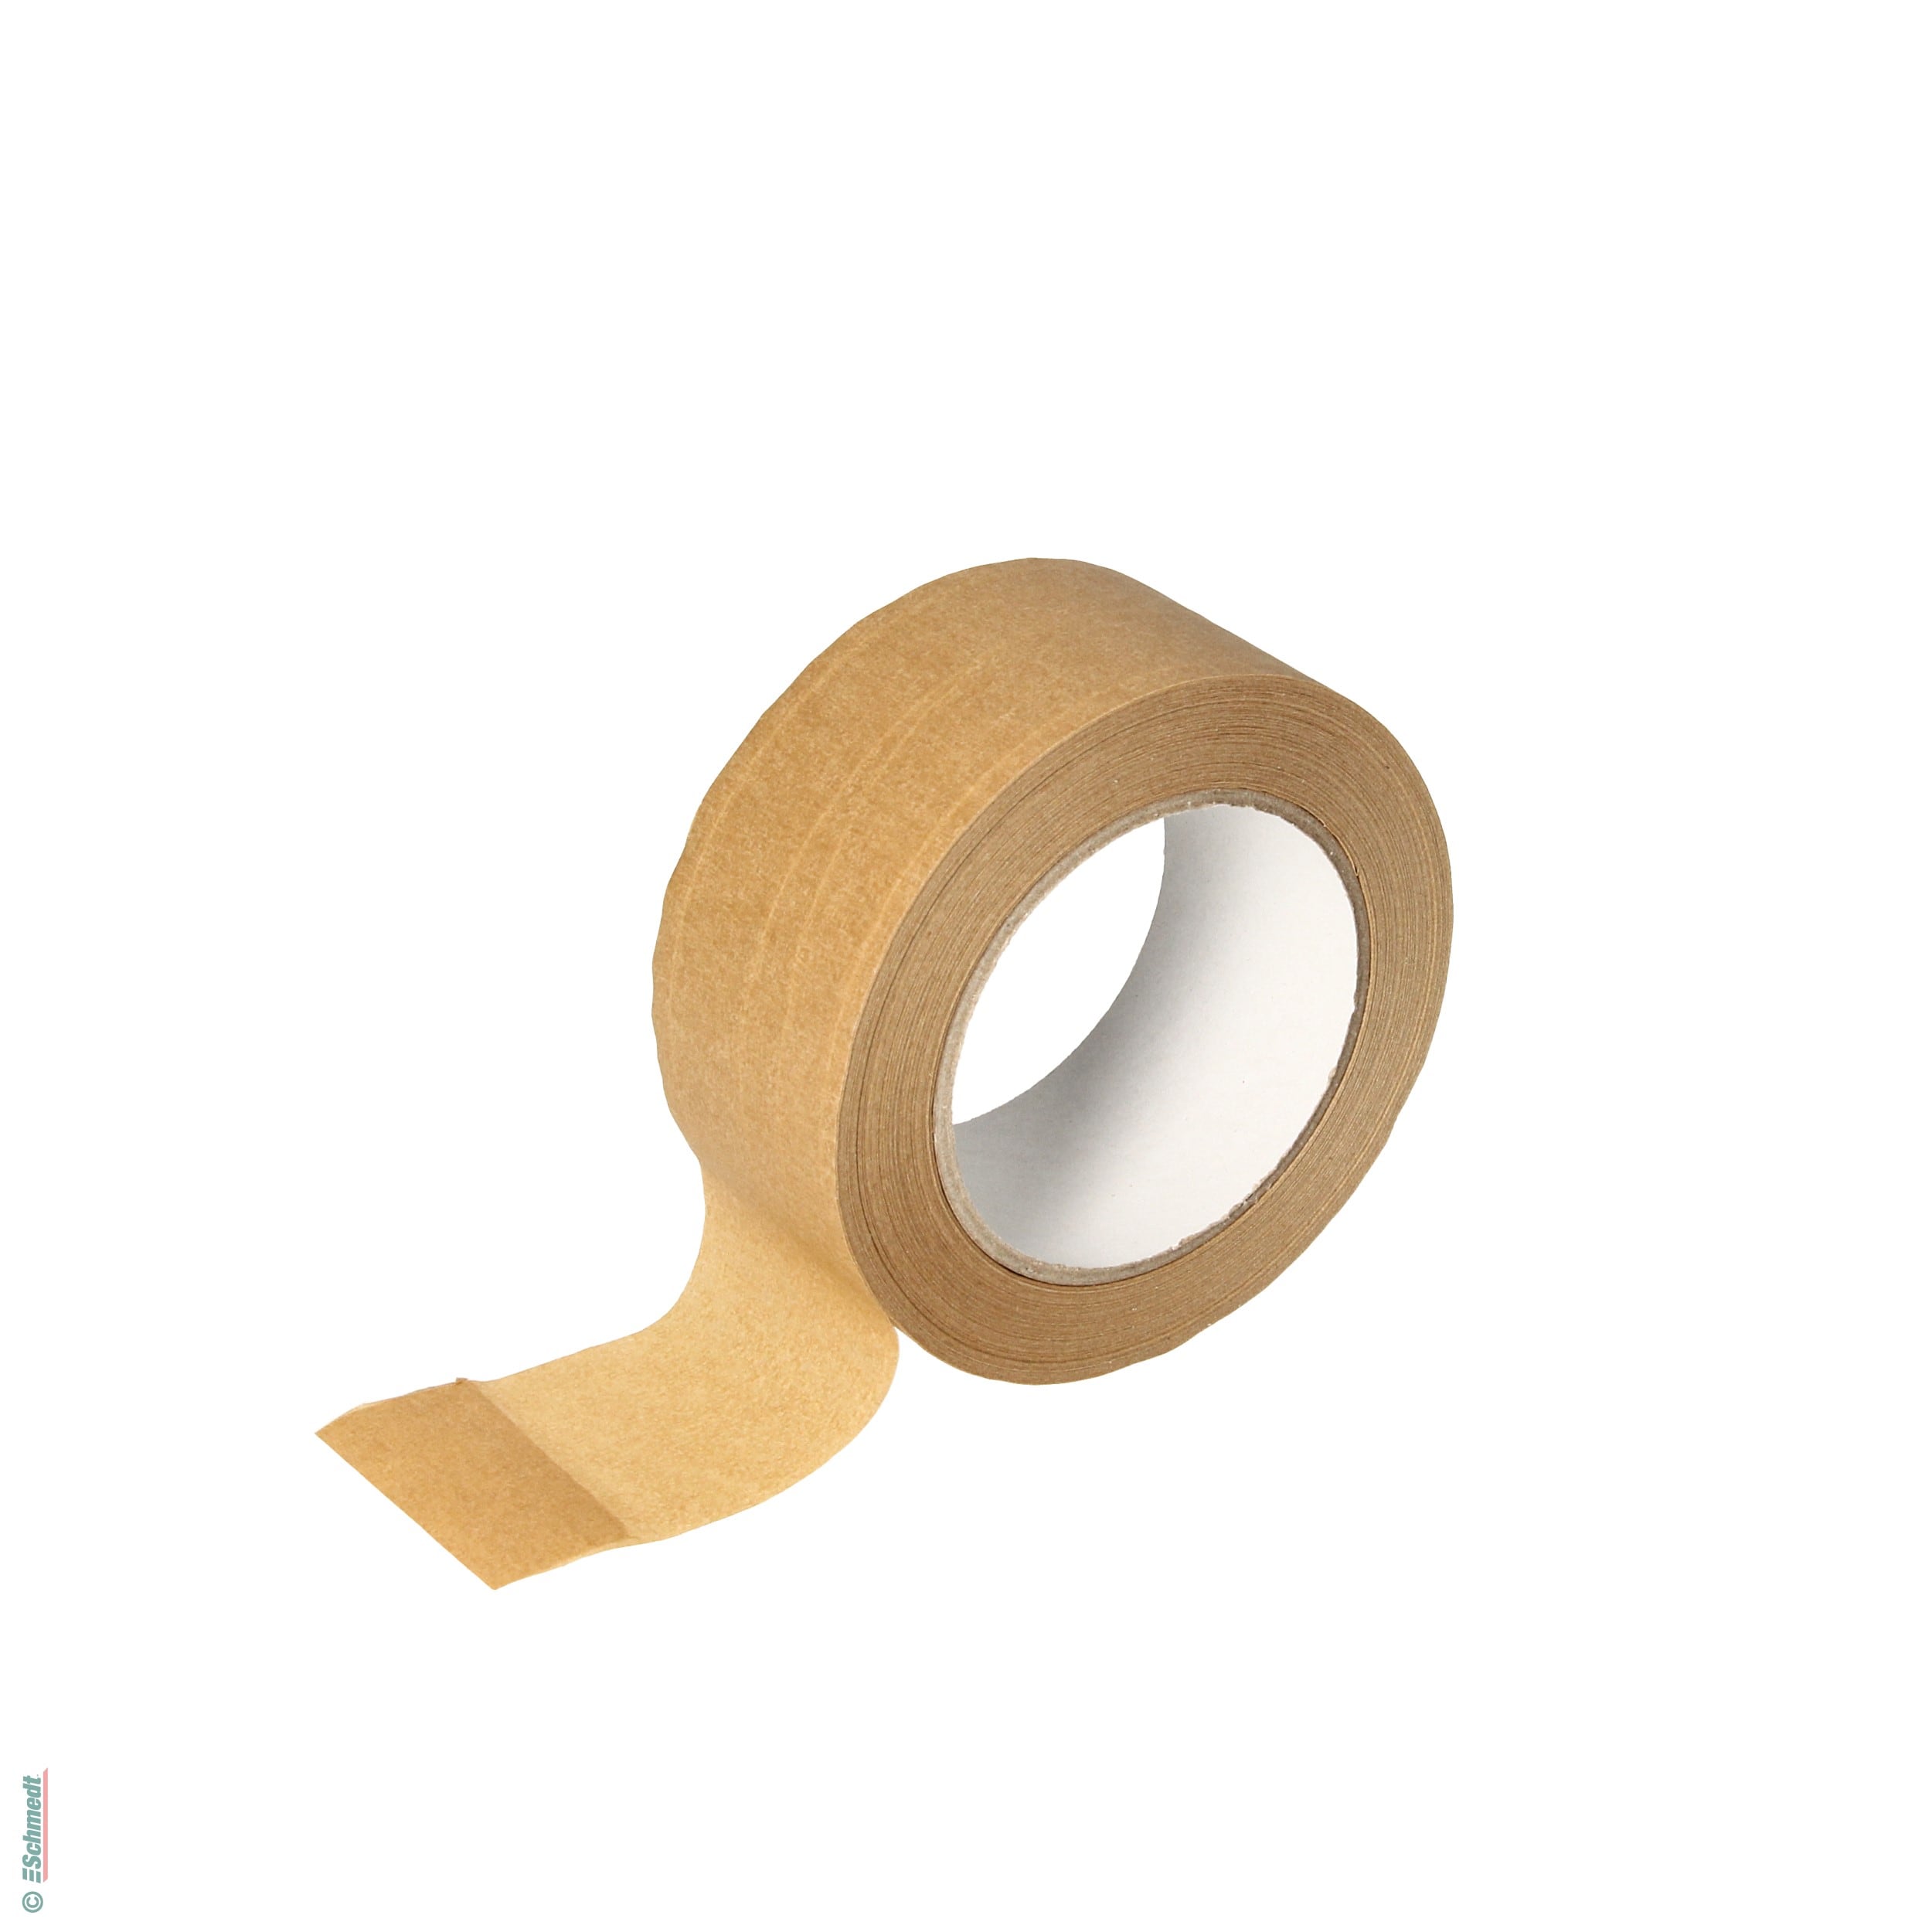 Cinta adhesiva para embalaje de papel | marrón - con refuerzo de hilo - Medidas del rollo: 50 mm x 50 m - para cerrar paquetes. Utilizado co...